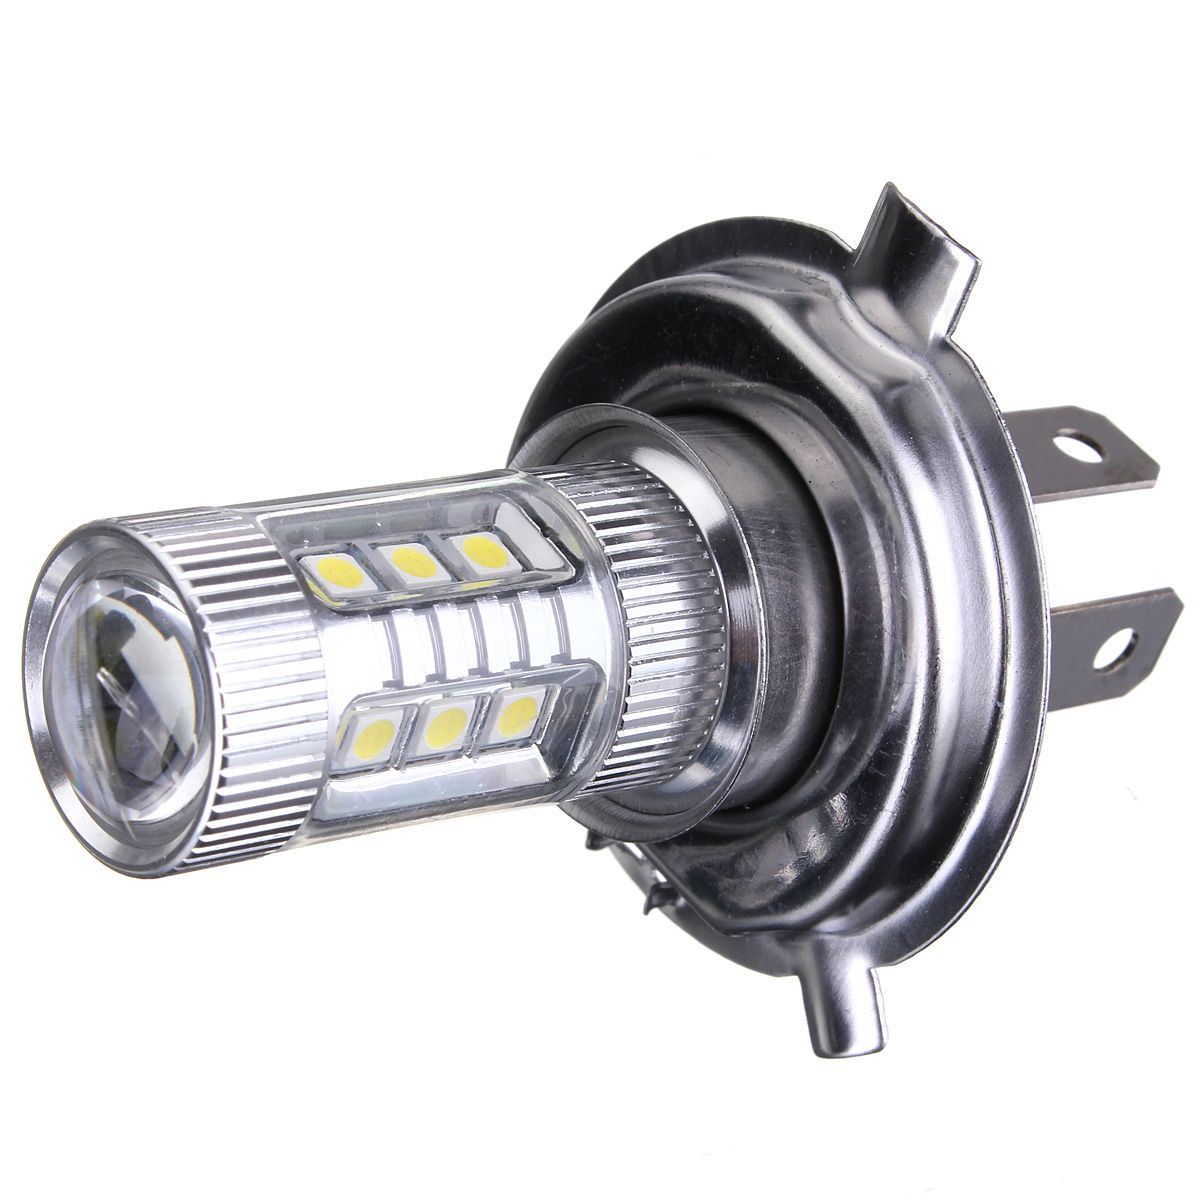 48W-H4-LED-Fog-Lights-High-Low-Headlight-Bulb-Daytime-Running-Lamp-7000K-White-for-Car-Motocycle-958039